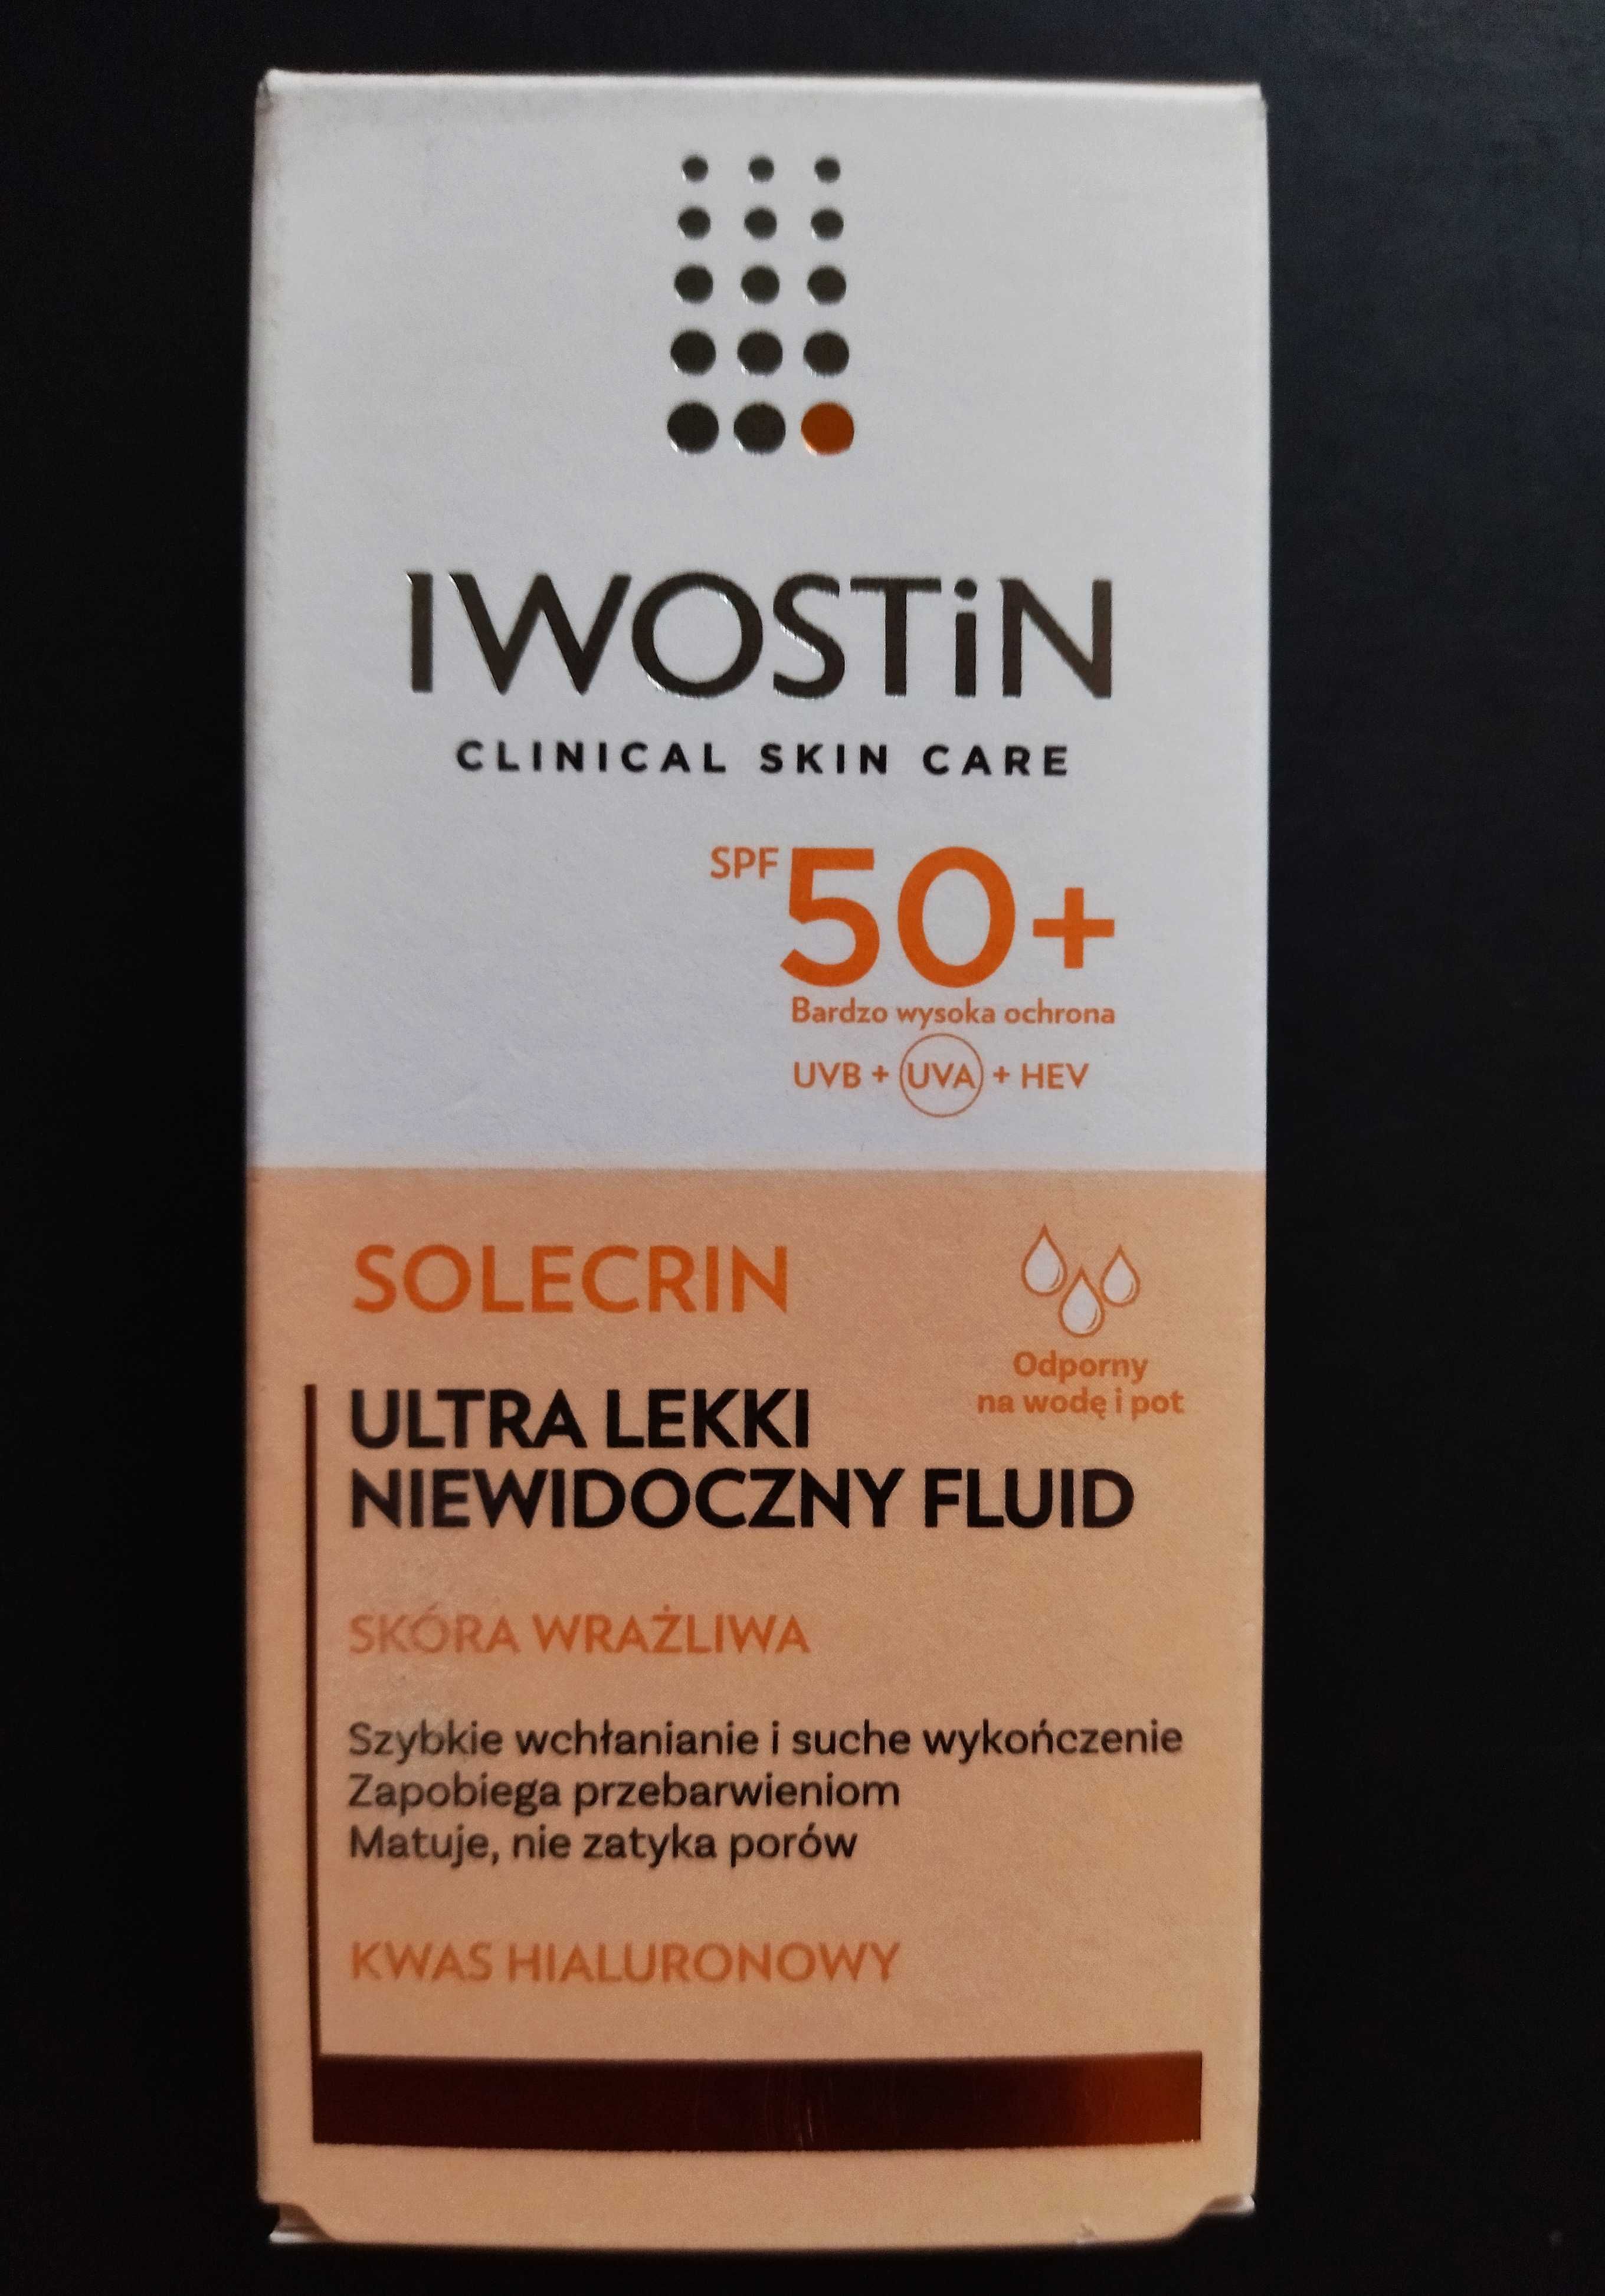 Iwostin Solecrin SPF 50+ ultra lekki niewidoczny 40 ml fluid